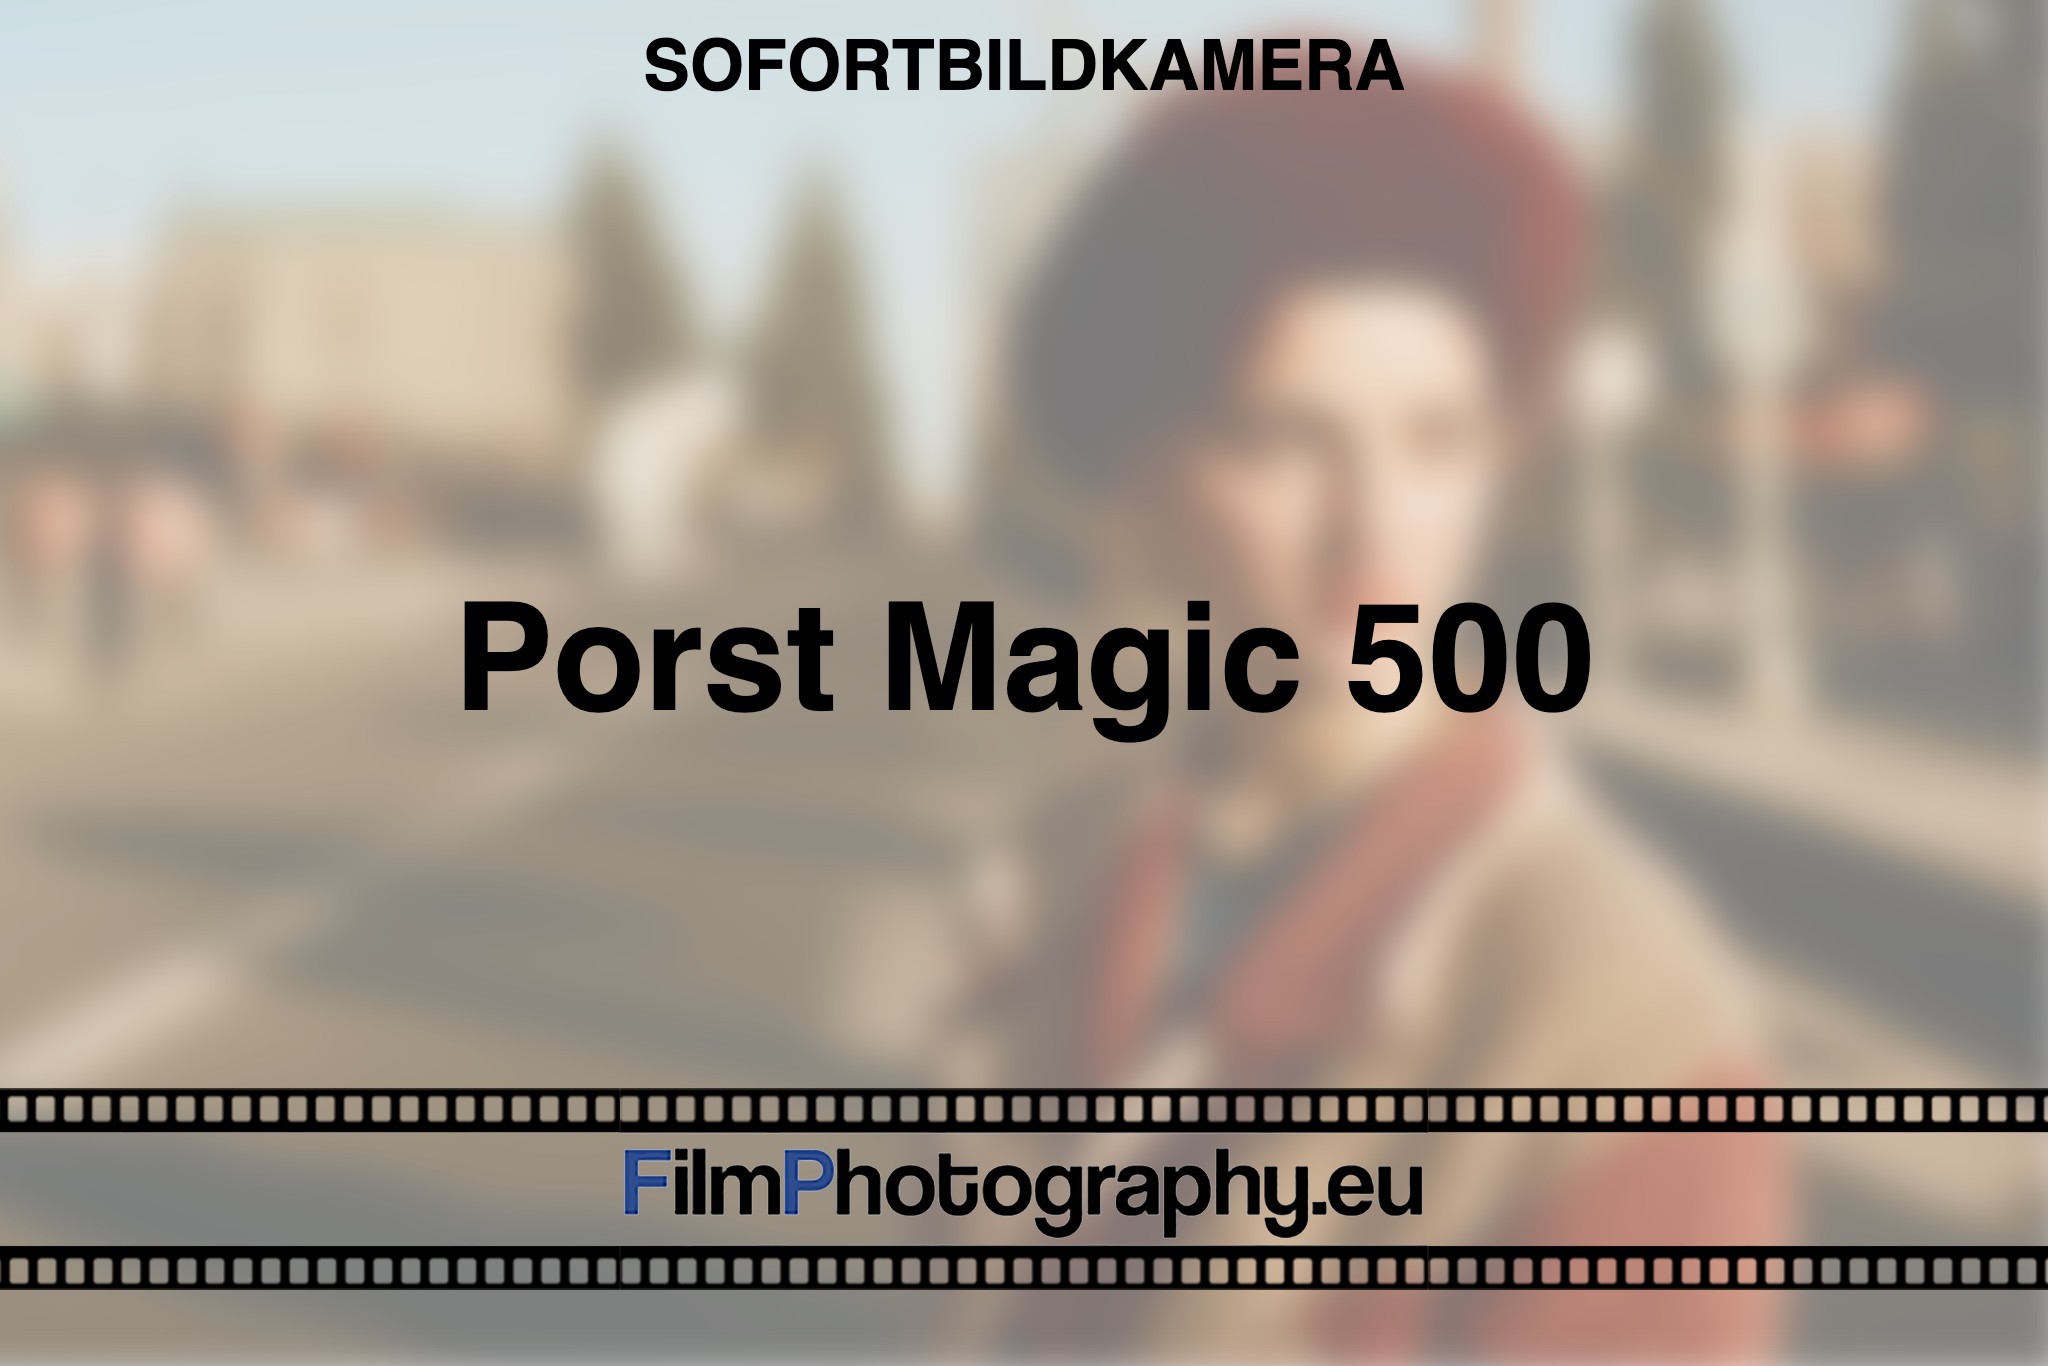 porst-magic-500-sofortbildkamera-bnv